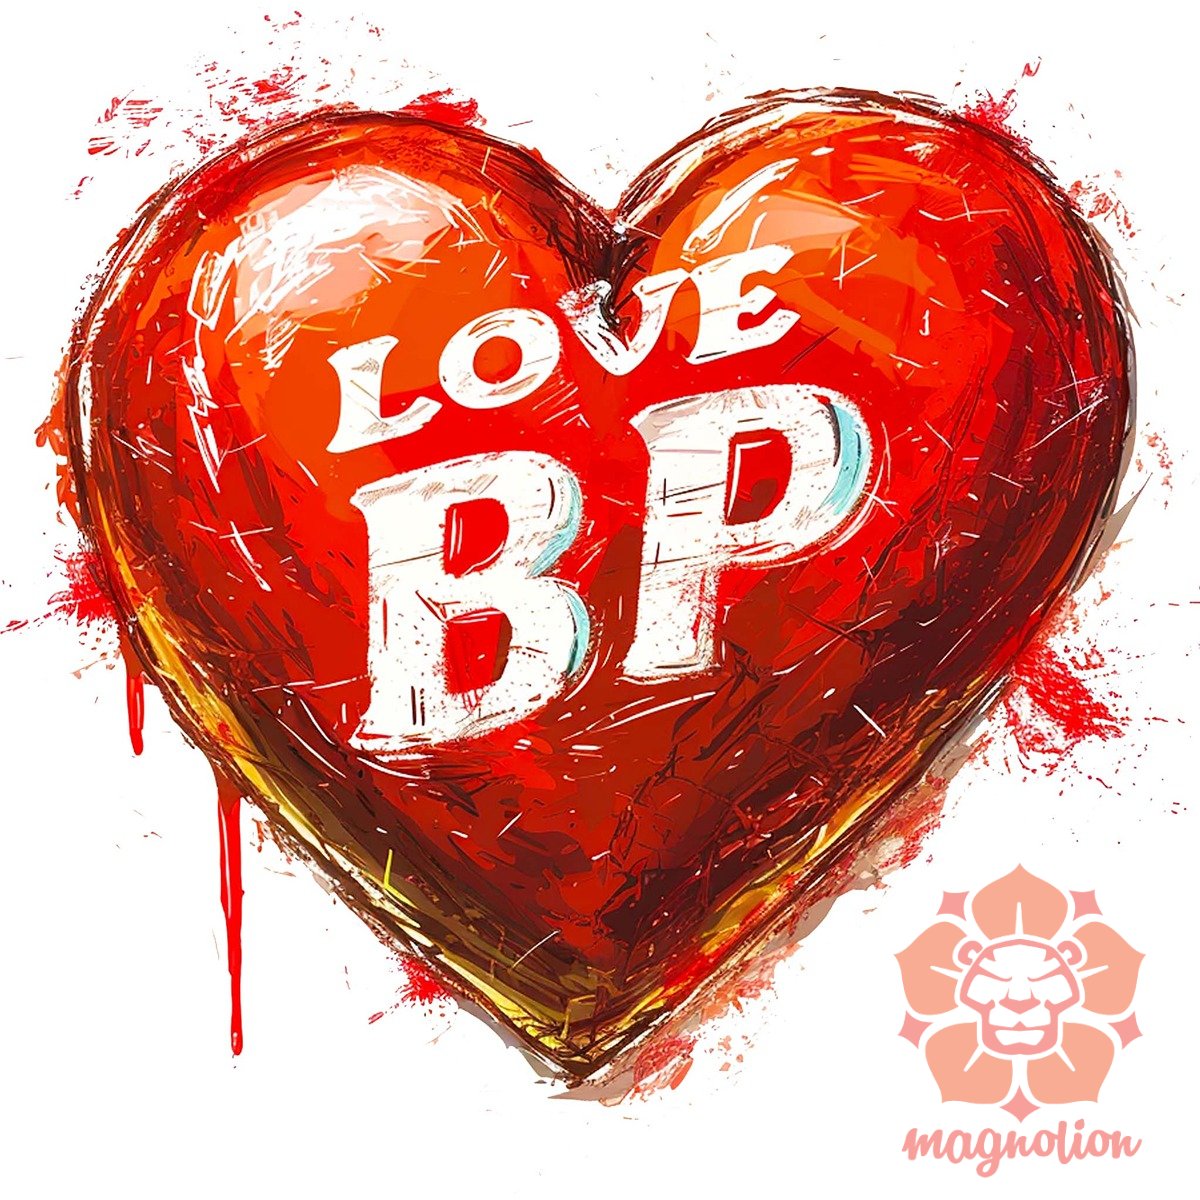 Love BP v3